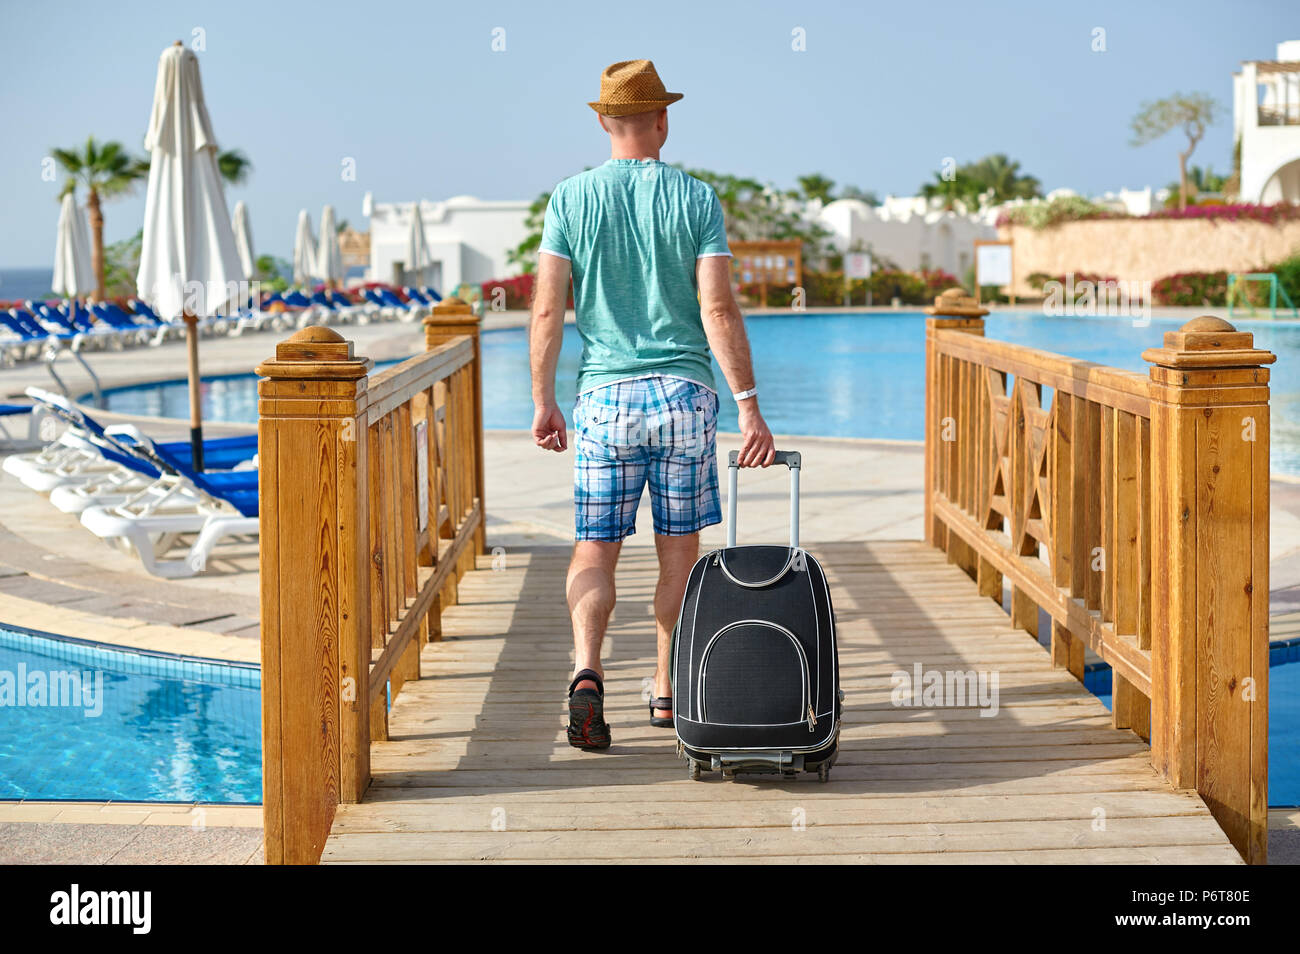 L'uomo turistico in abiti estivi con una valigia in mano, guardando il mare sulla spiaggia con piscina in hotel, il concetto di tempo per viaggiare Foto Stock